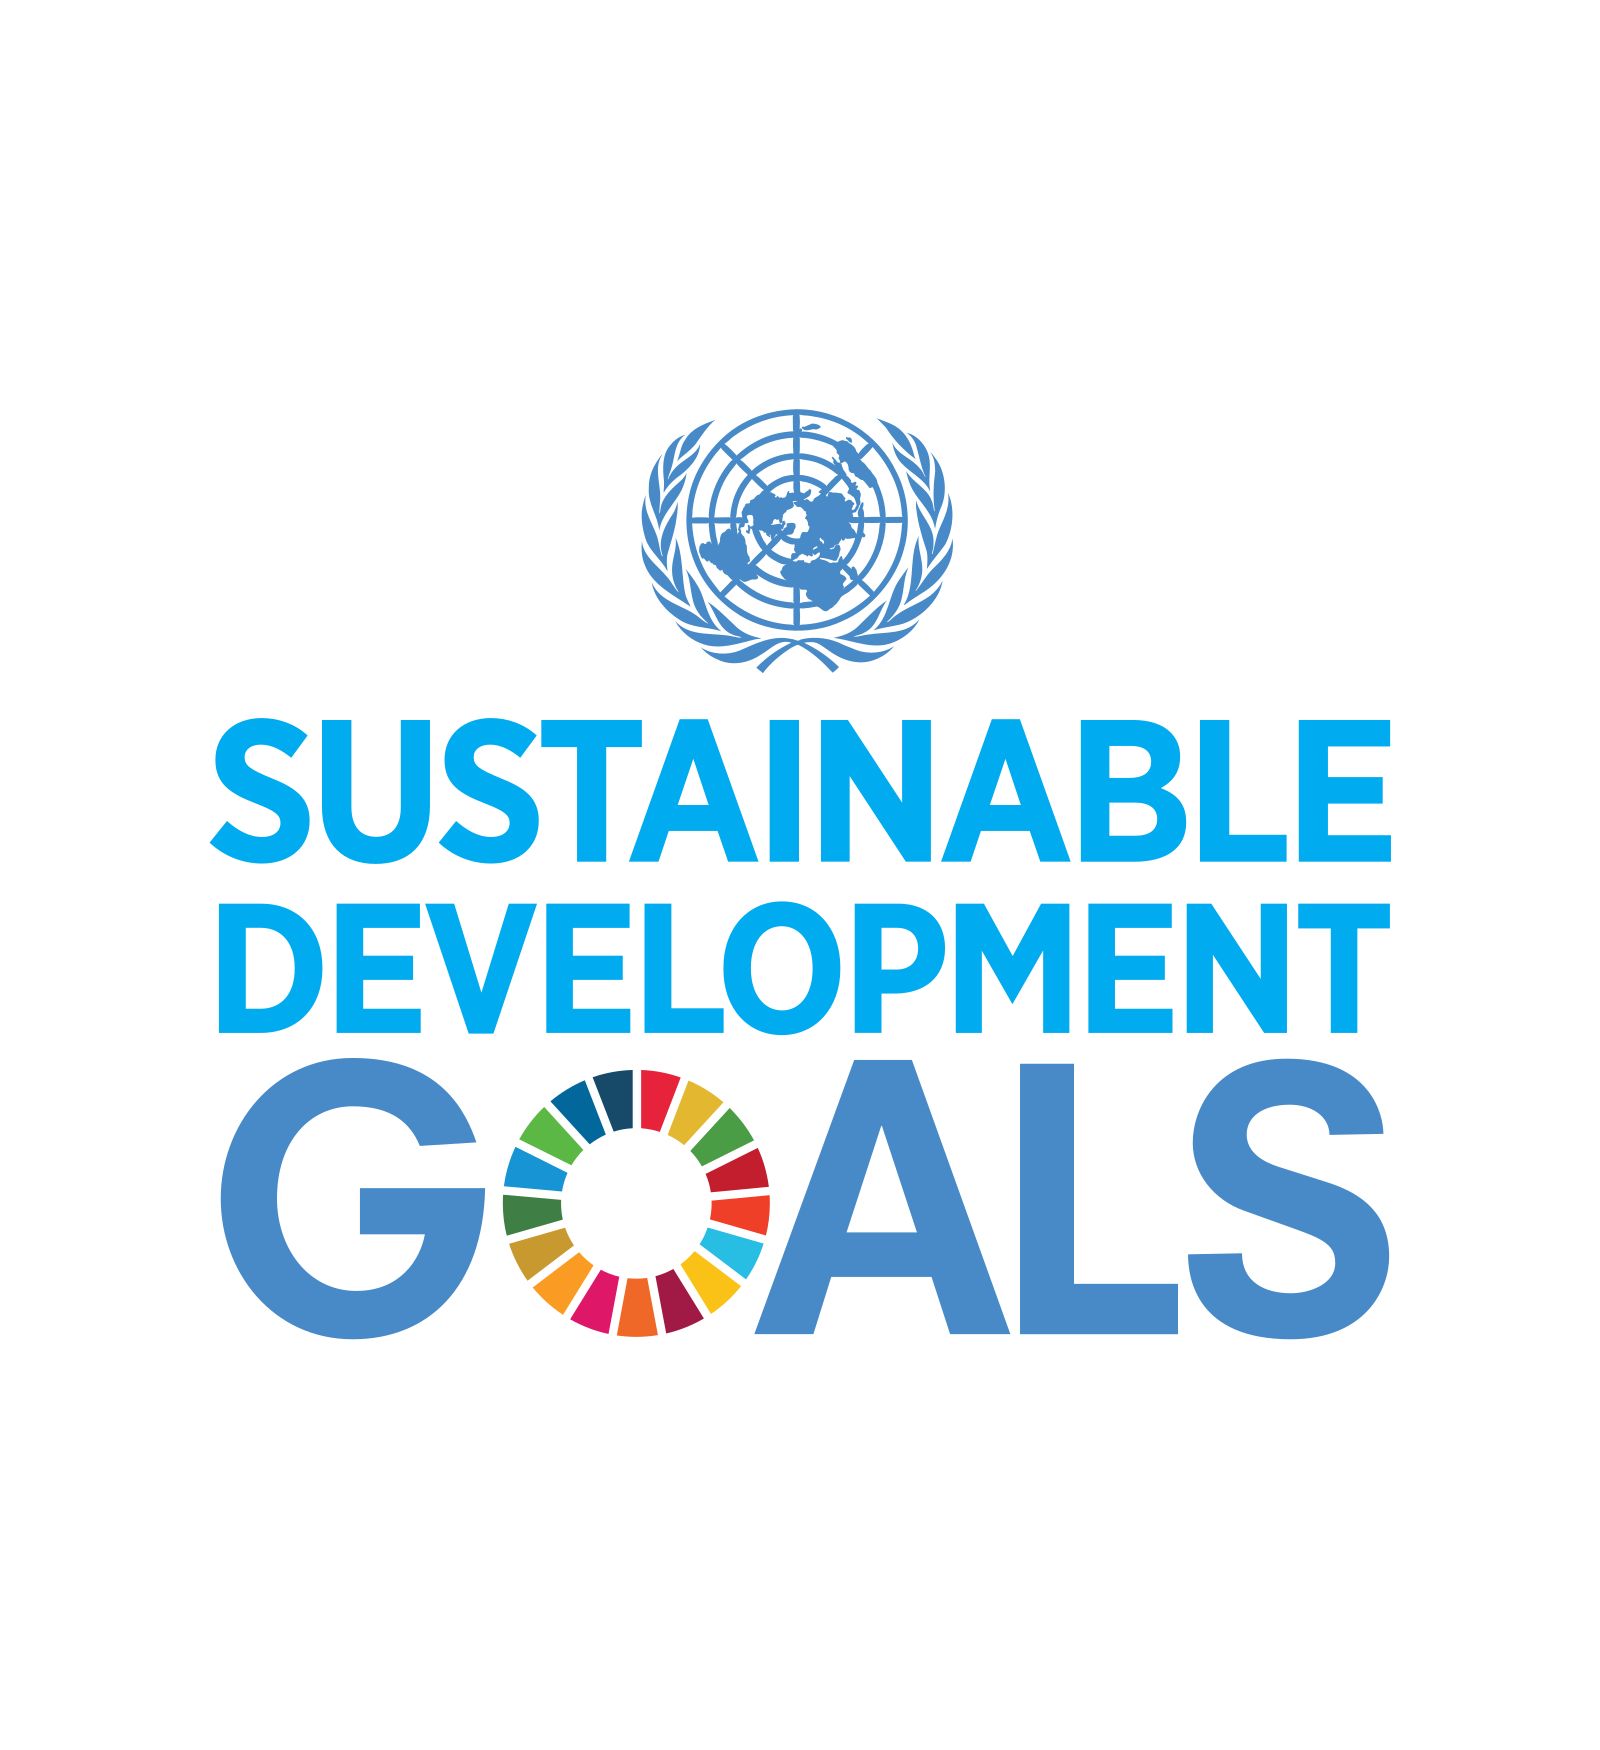 Логотипи міжнародної організації для цілей сталого розвитку 